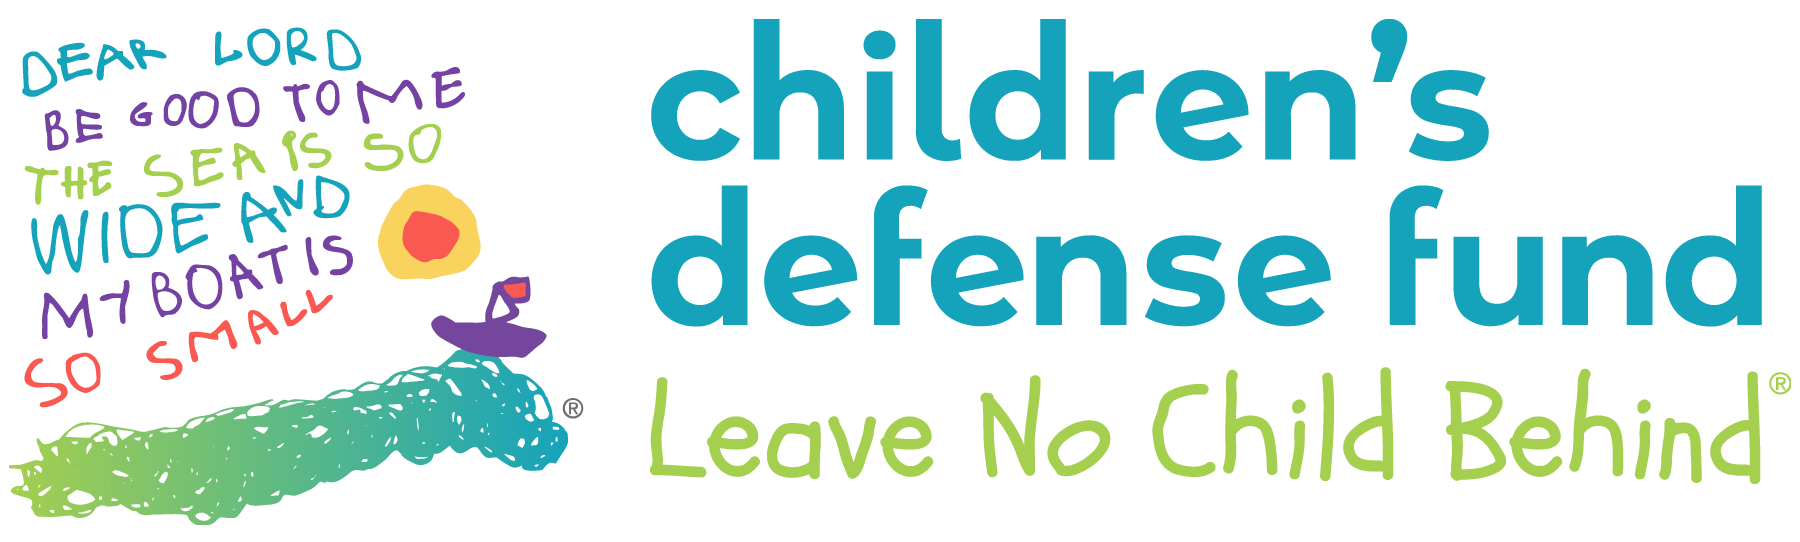 Children's Defense Fund logo.